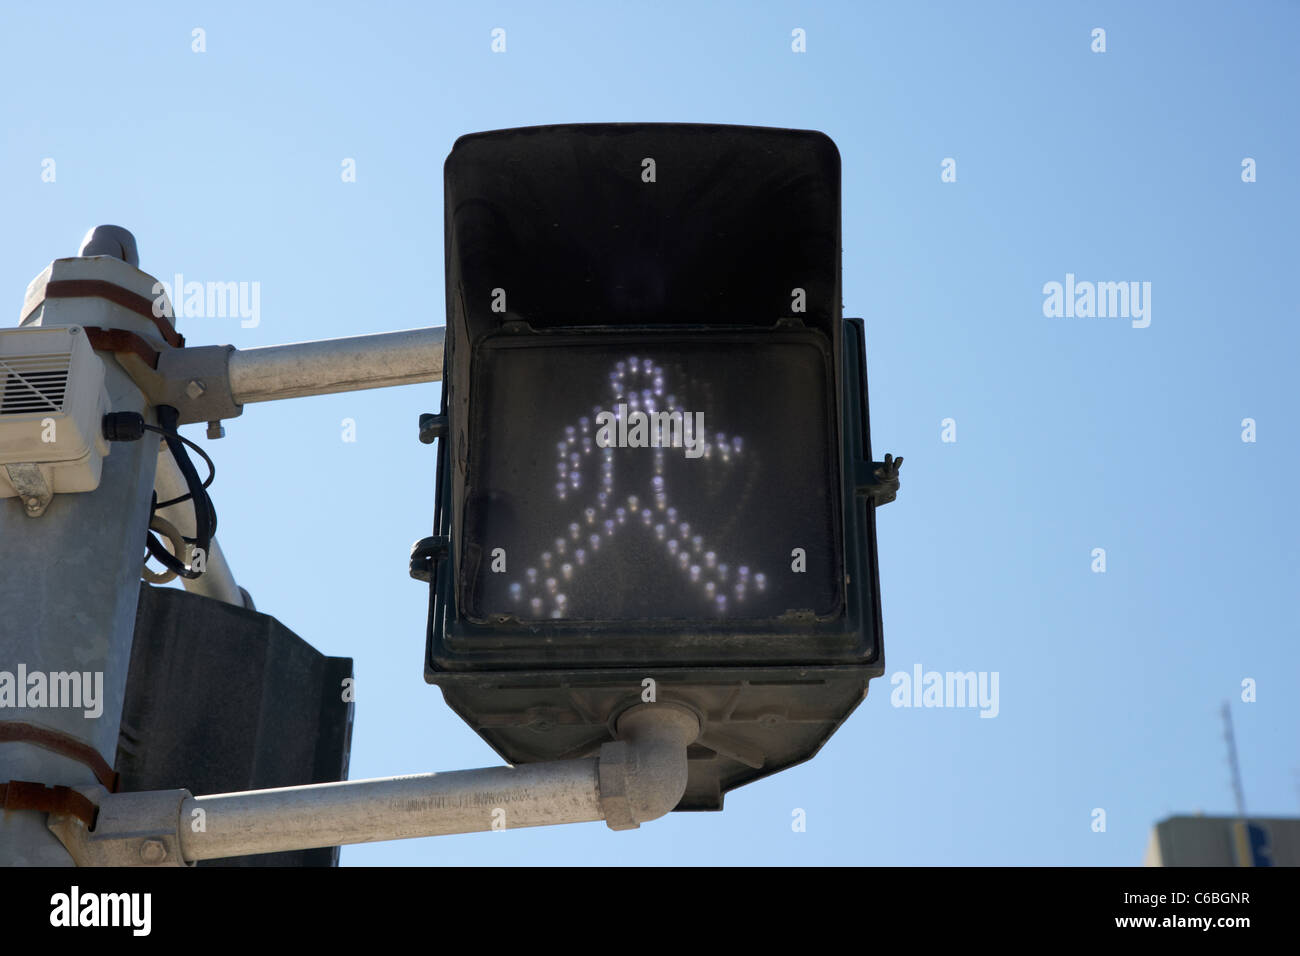 Led de baja energía hombre blanco cruz signo de cruce peatonal en el centro de Winnipeg, Manitoba, Canadá Foto de stock